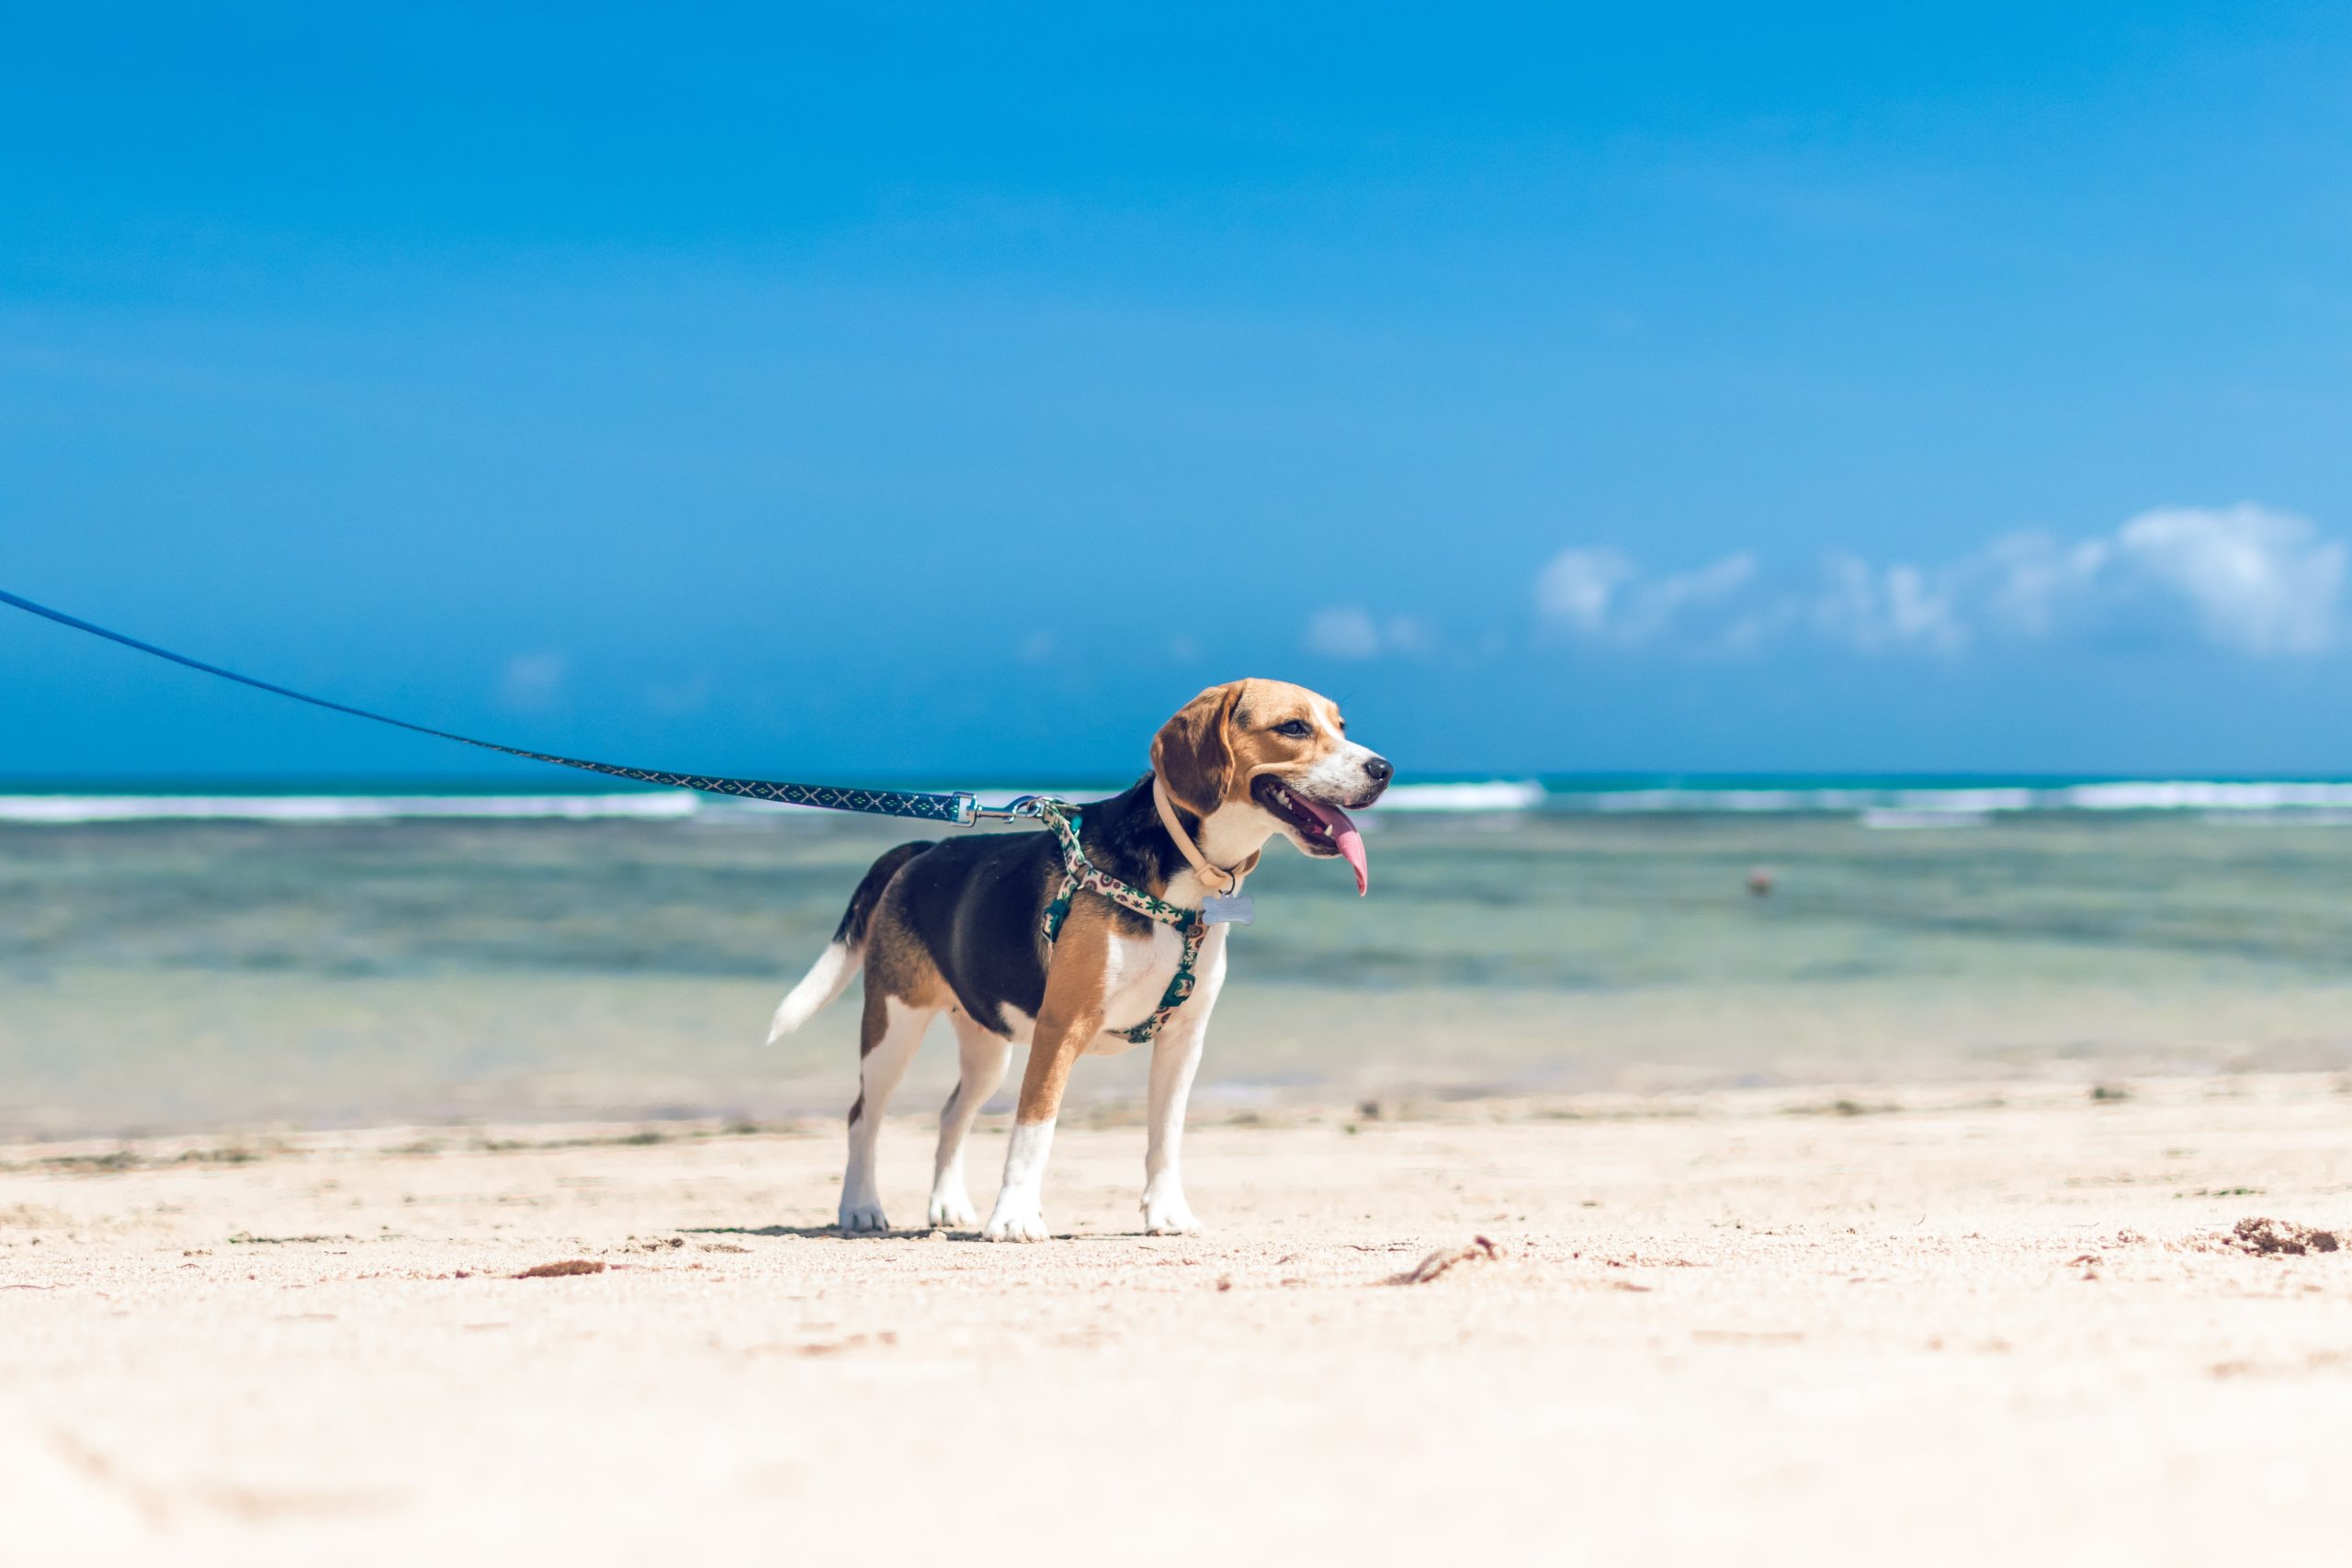 Dog on a lead against a beach backdrop